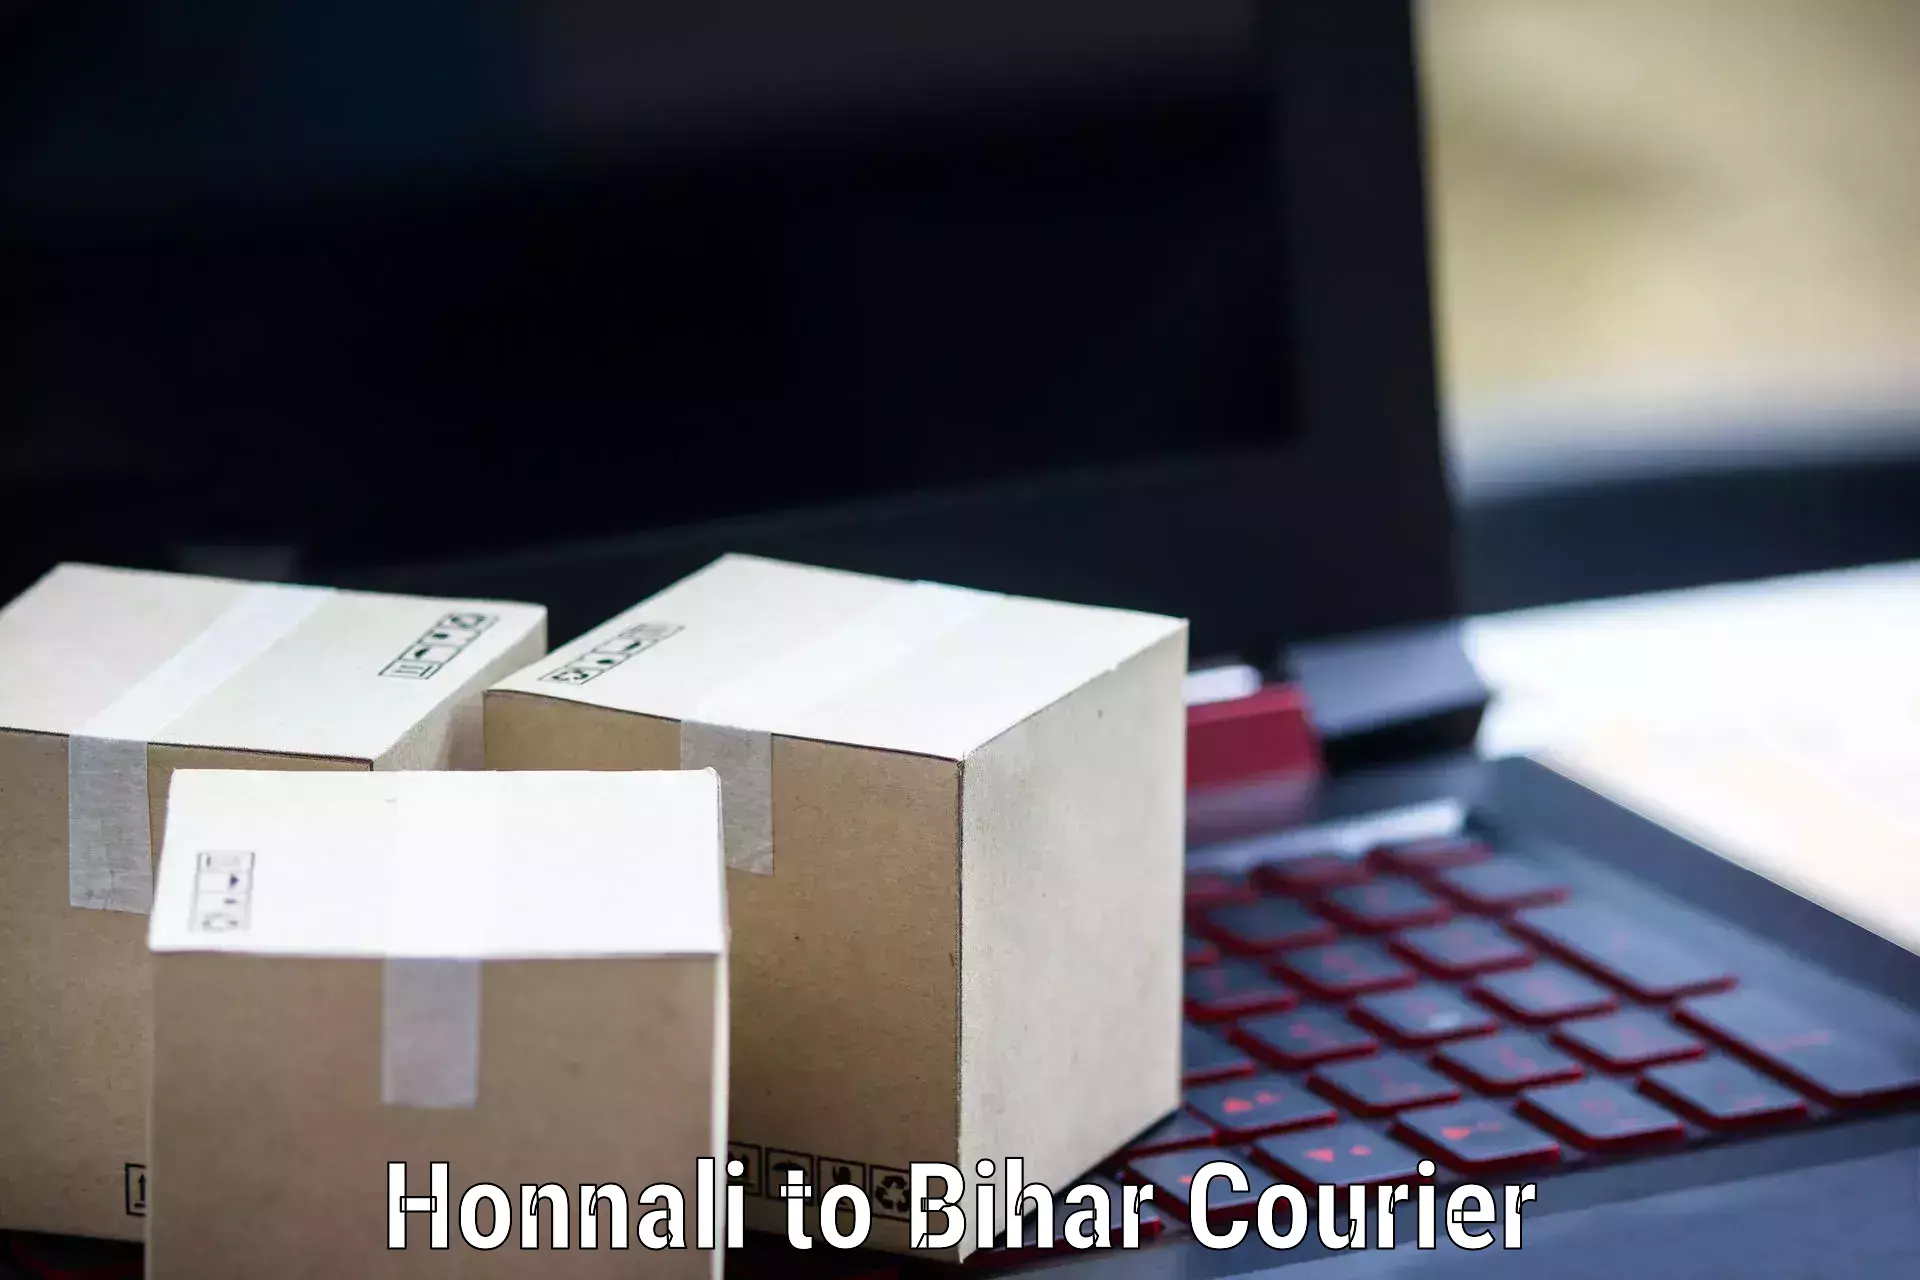 High-capacity parcel service Honnali to Lakhisarai